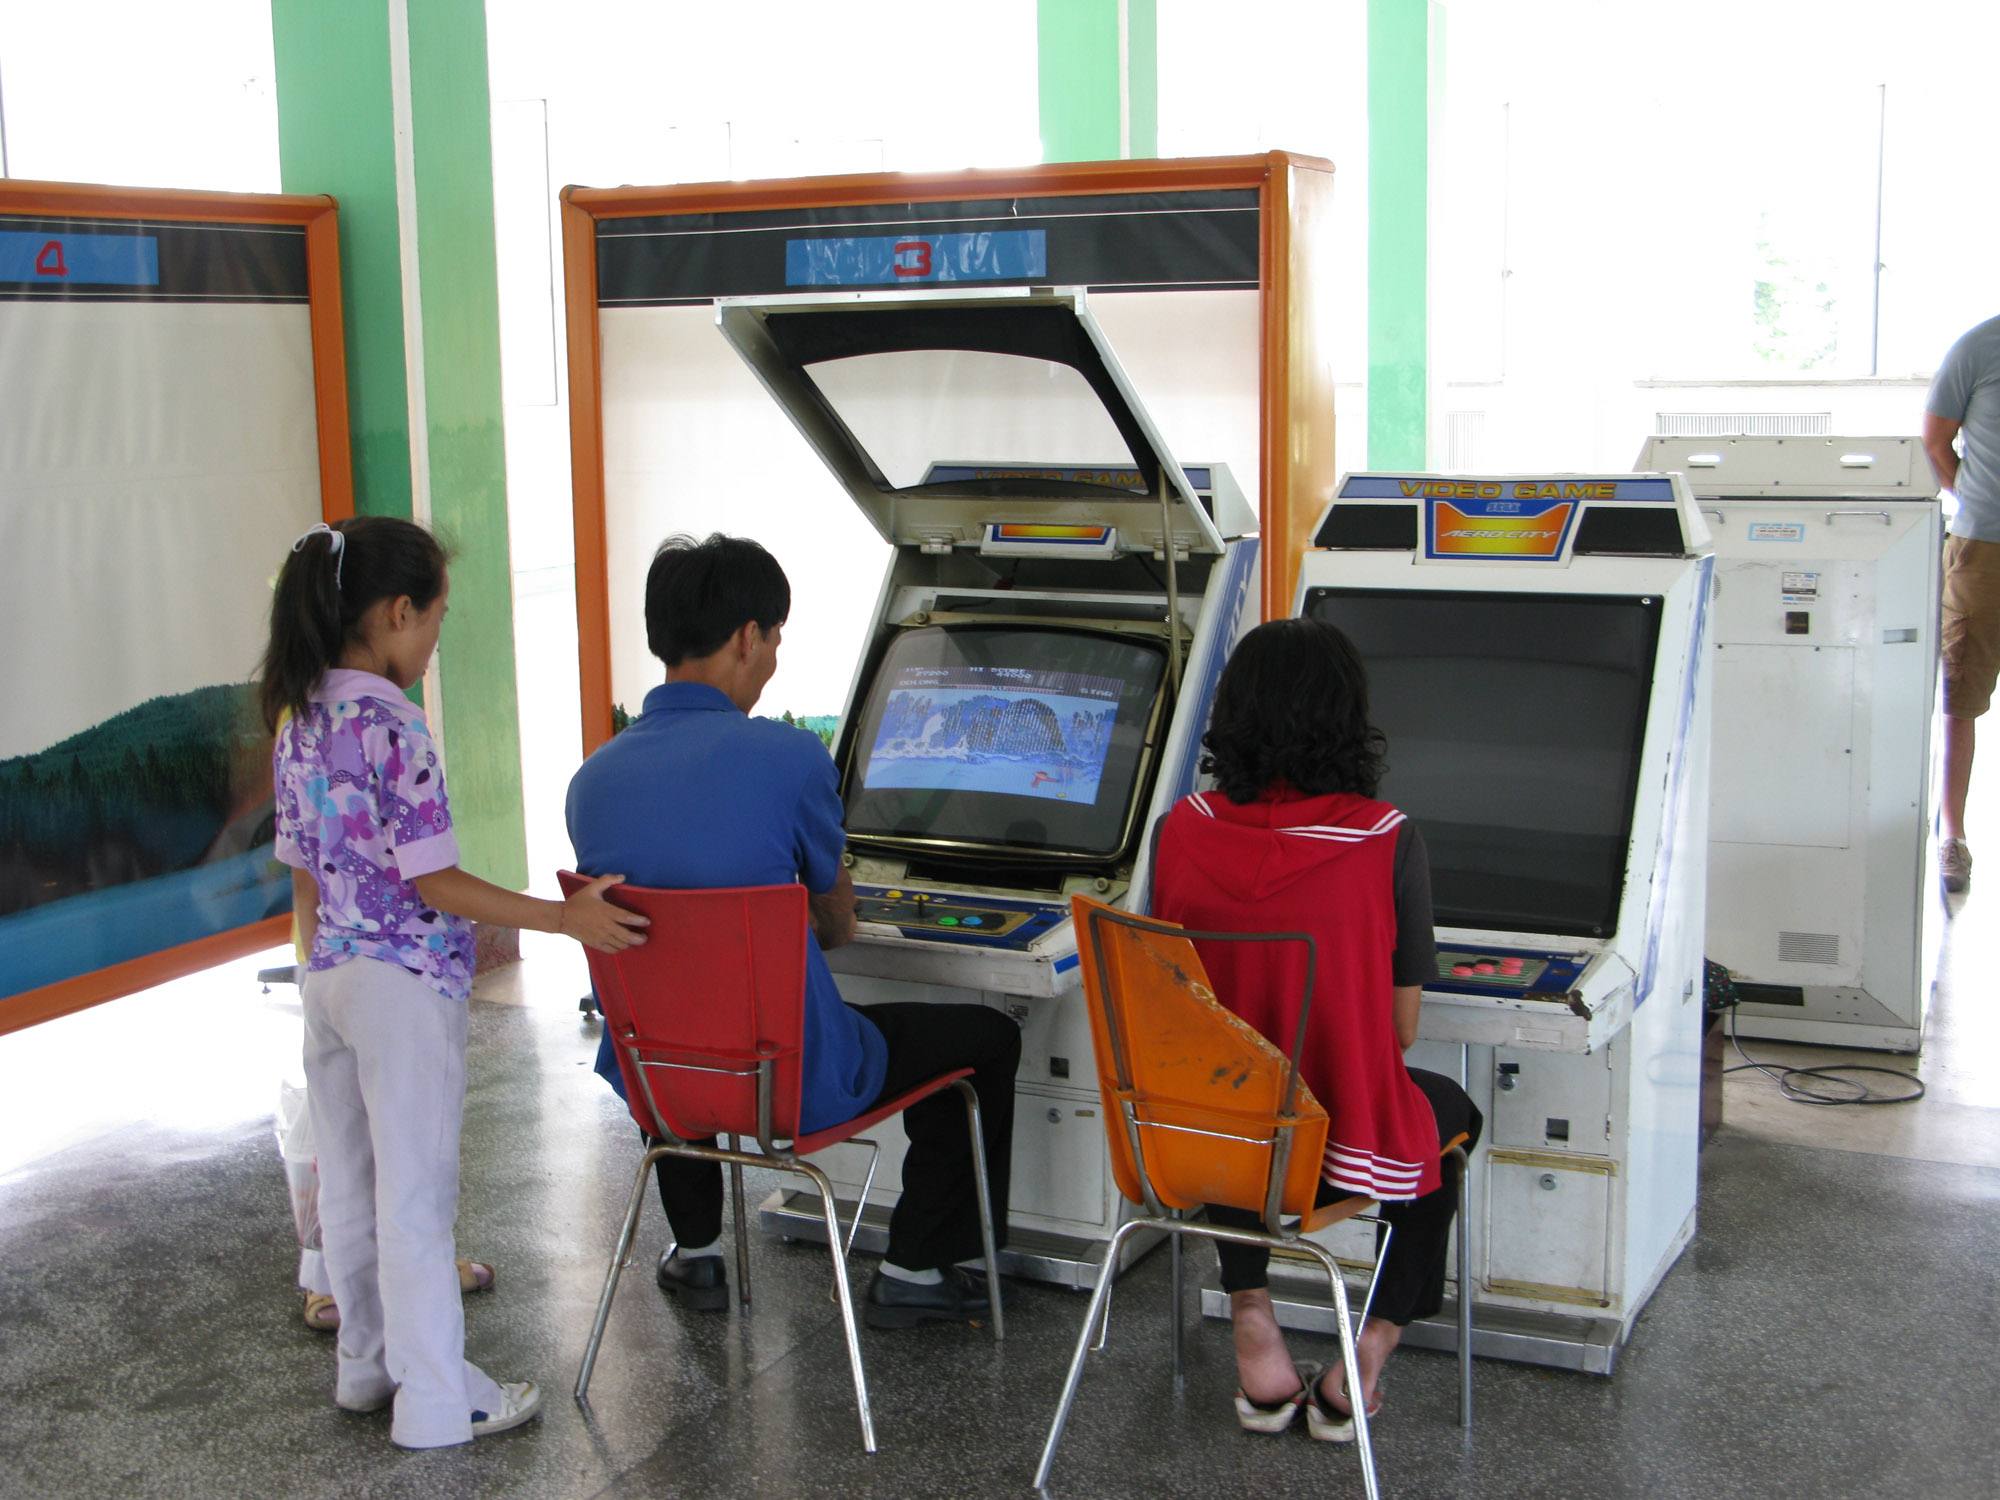 Аркадные игровые автоматы в Северной Корее